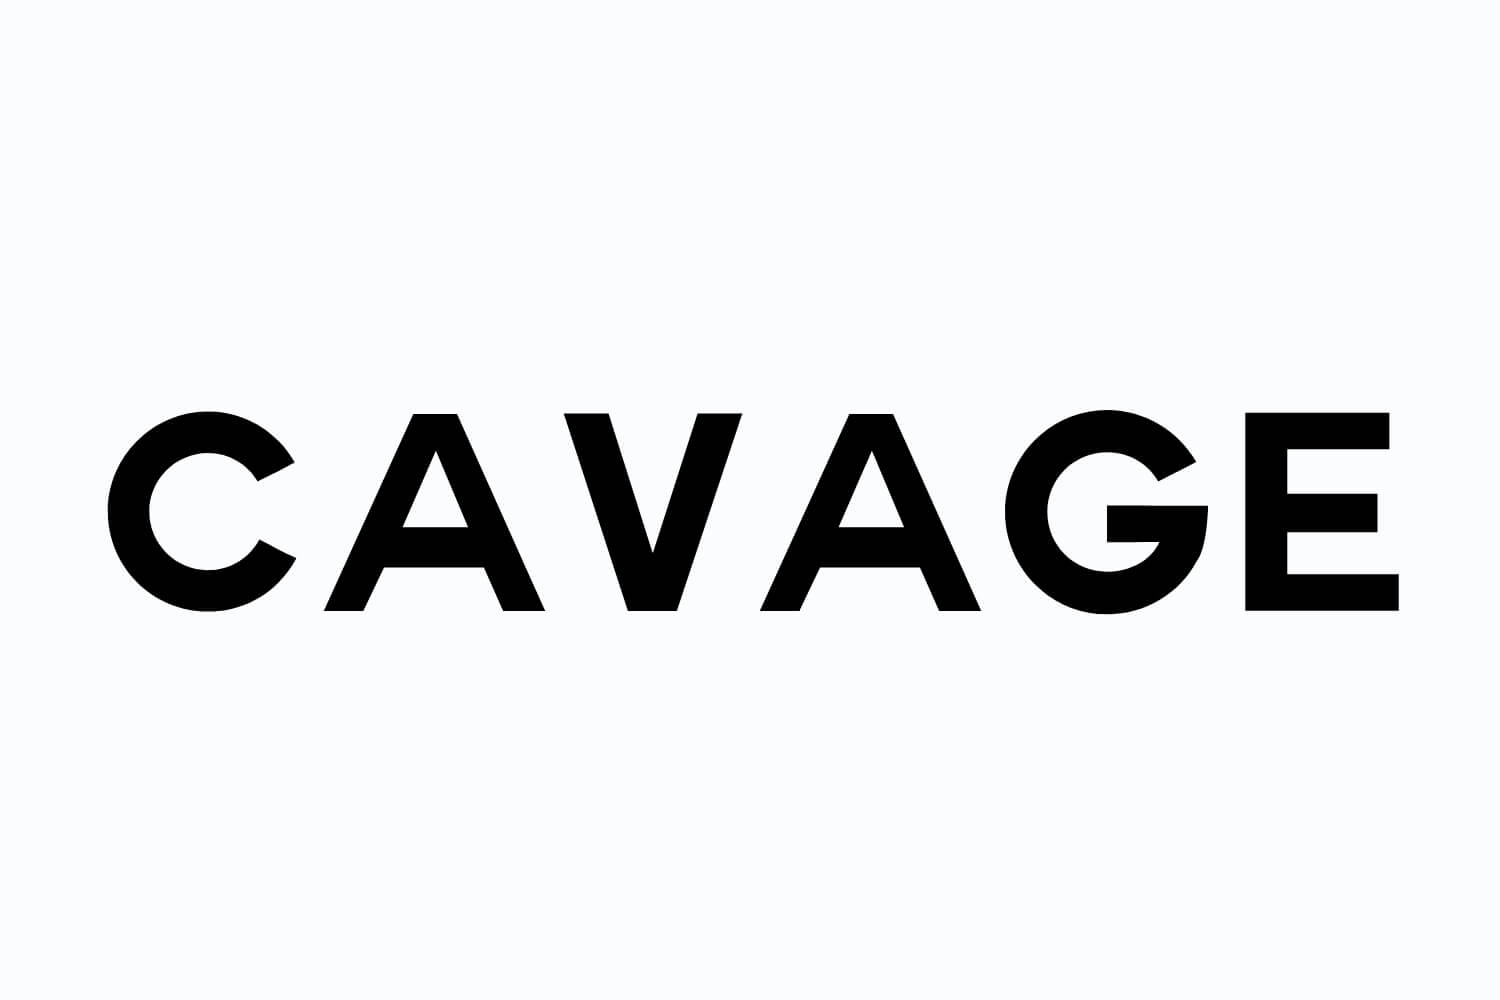 Cavage